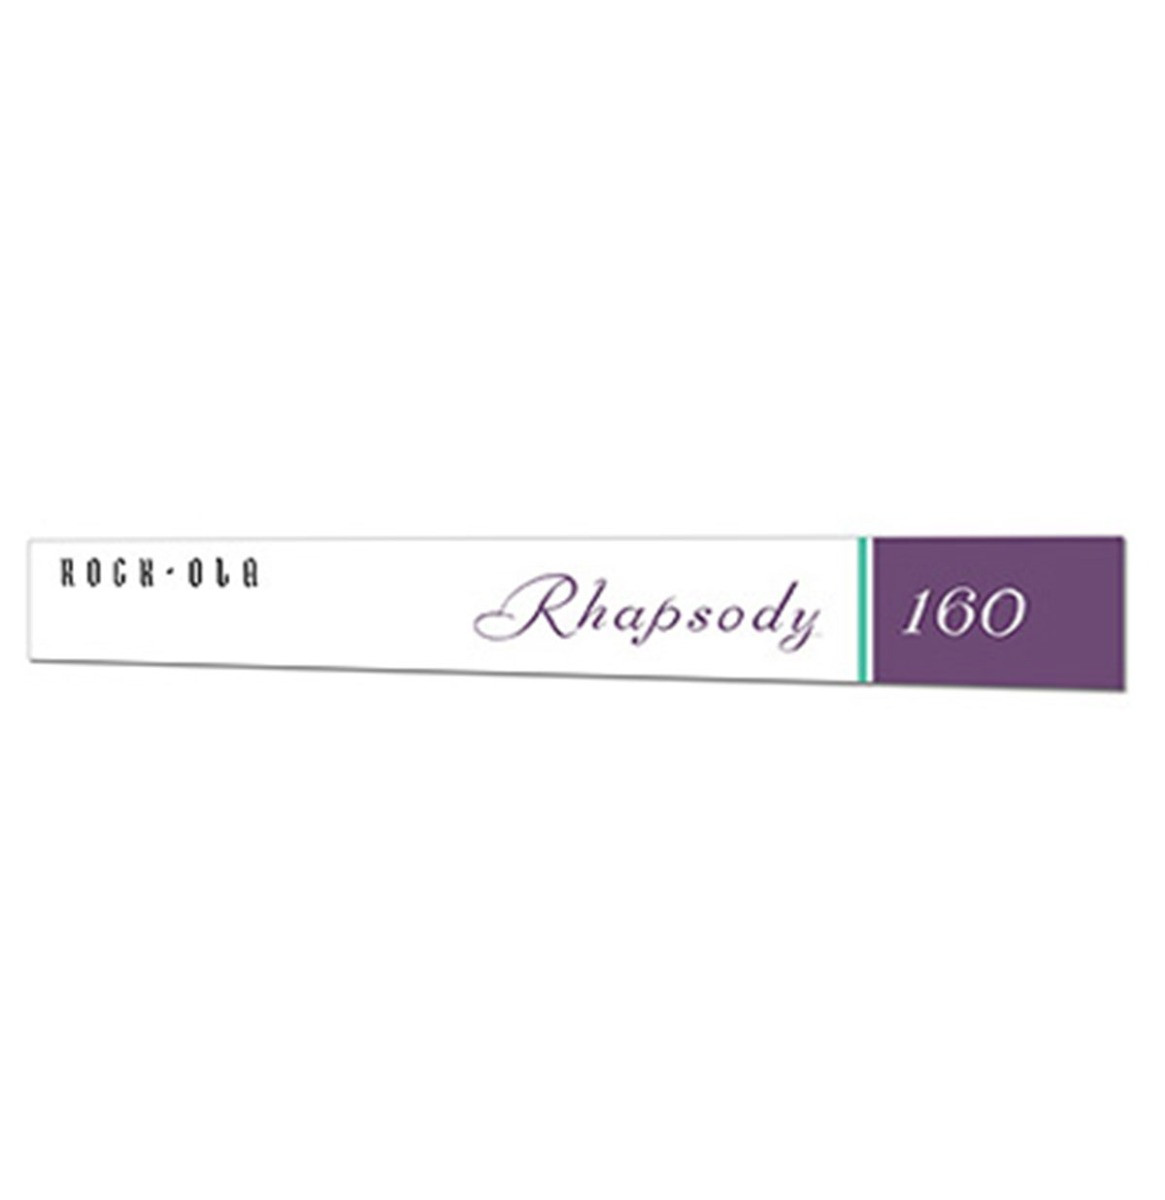 Rock-Ola 404 Rhapsody 160 Onderste Ruit Sticker